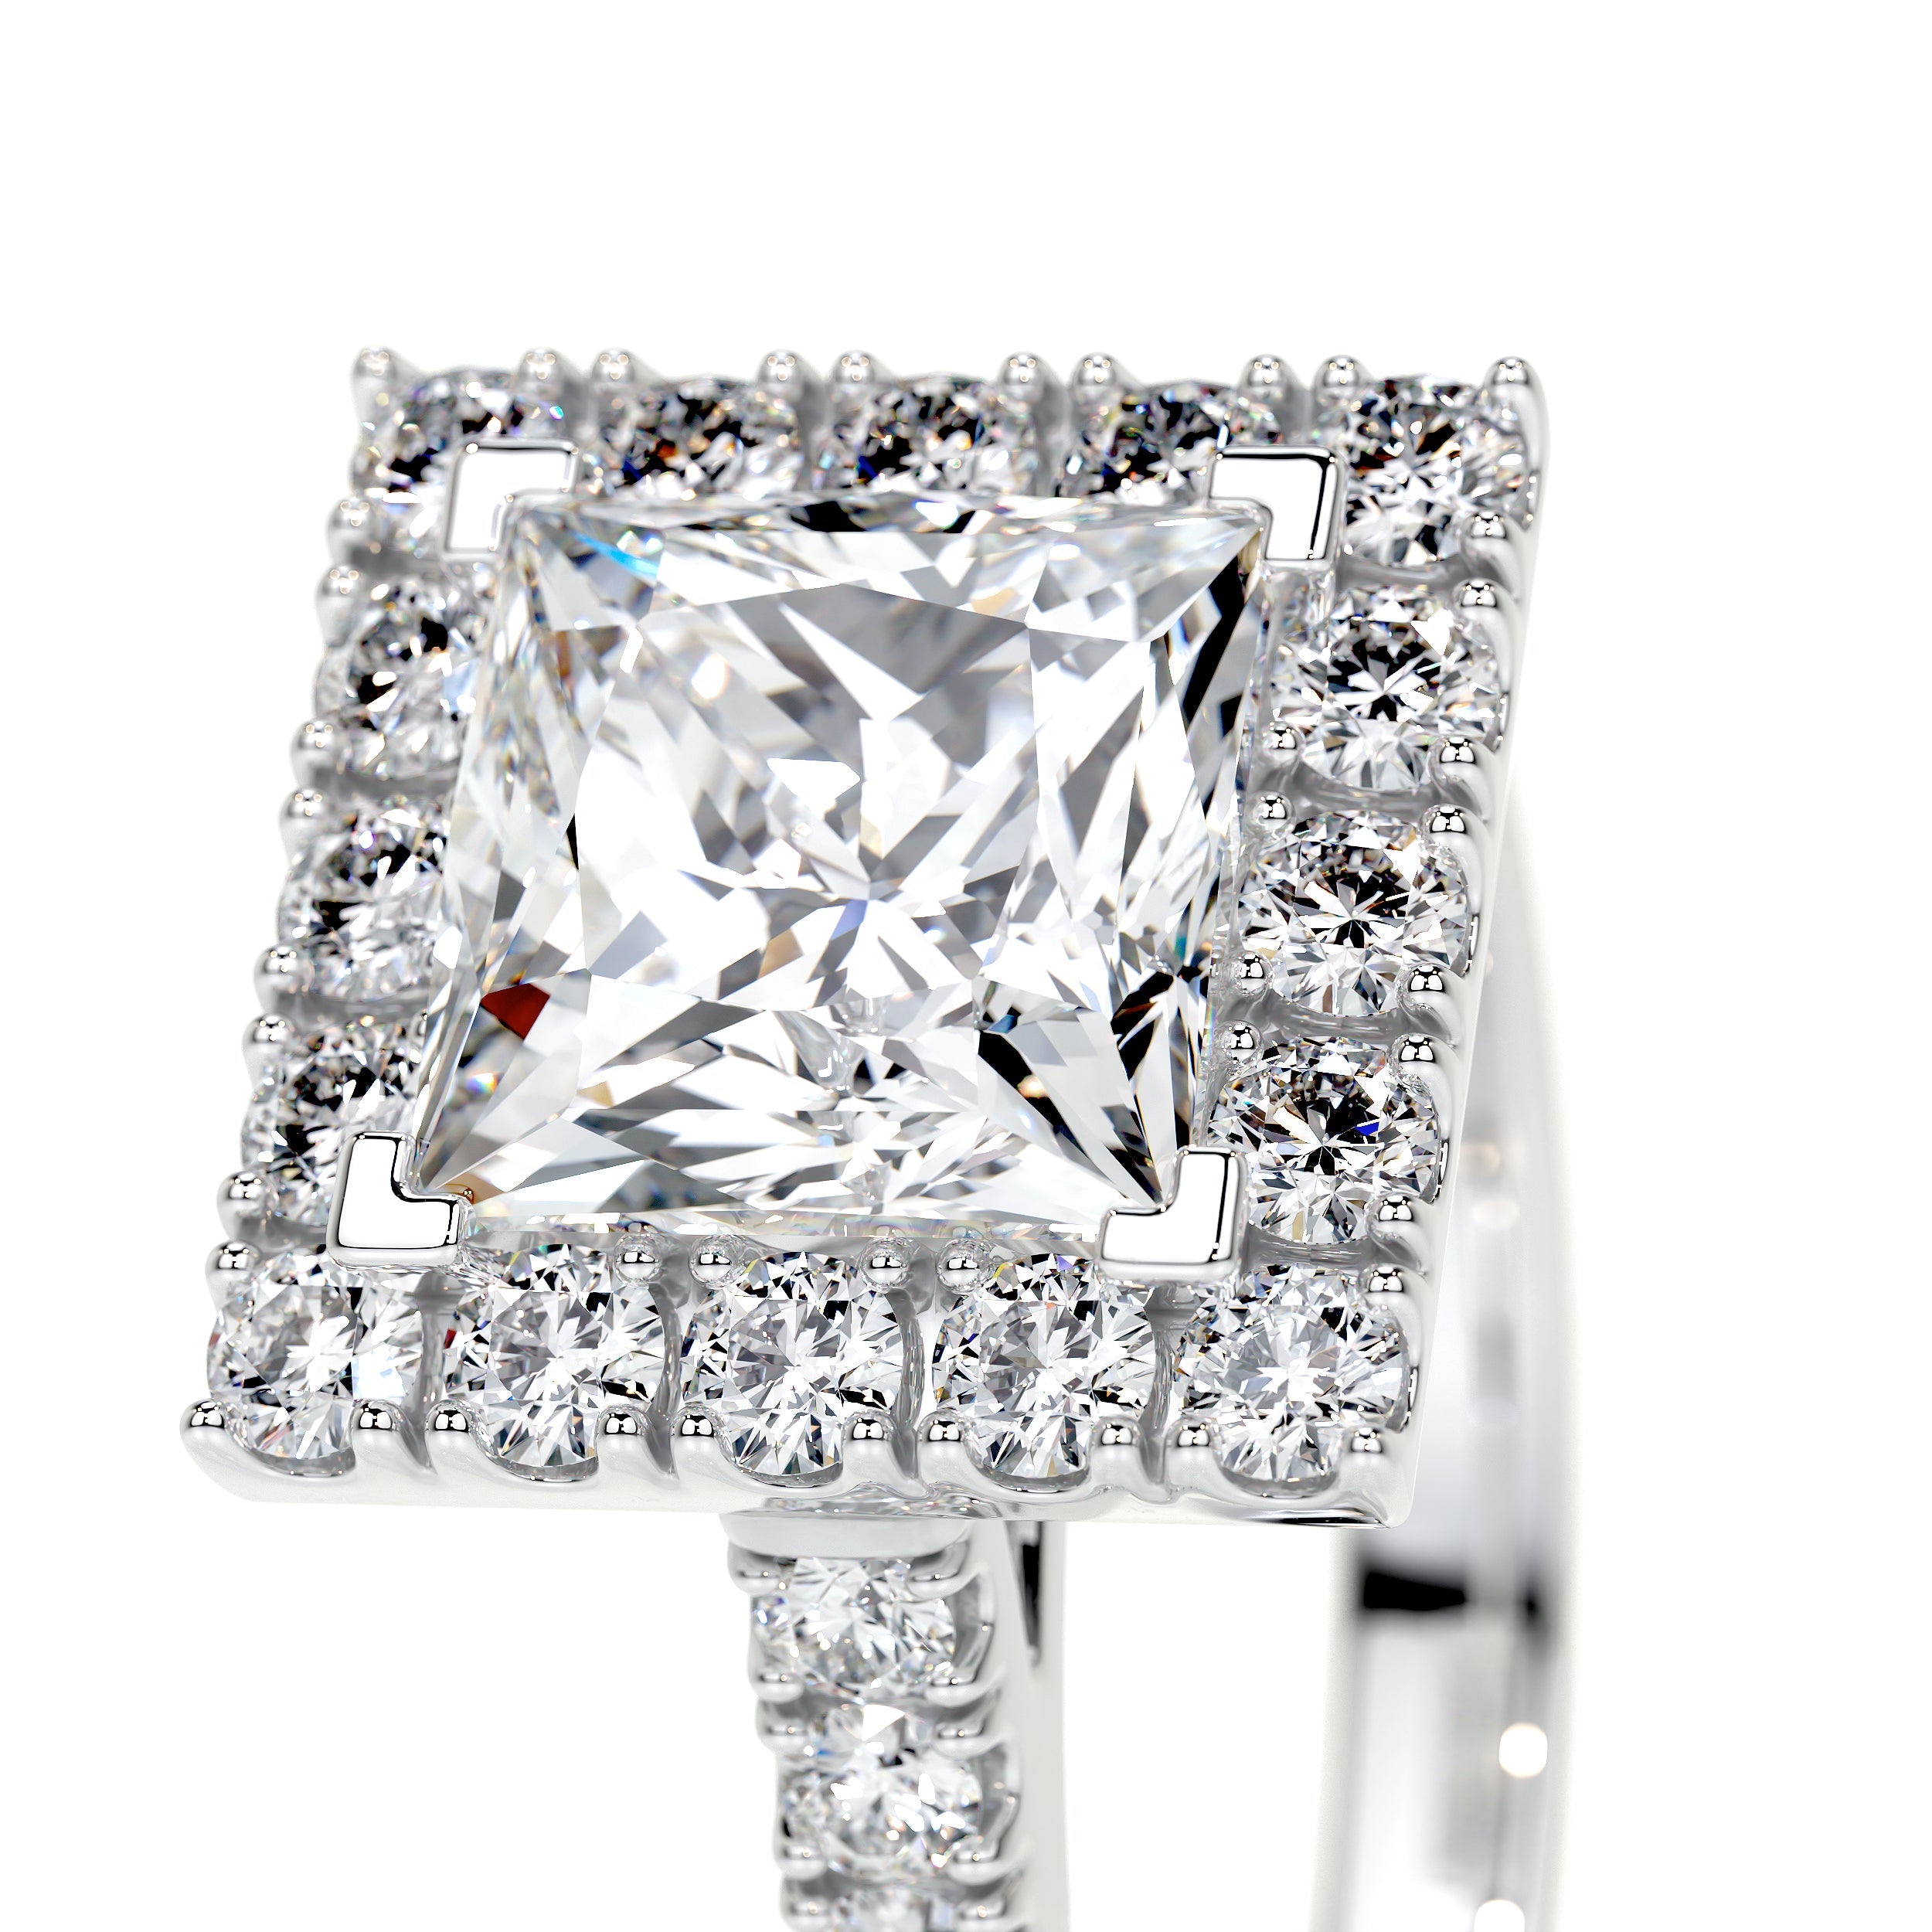 Patricia Lab Grown Diamond Ring   (2.5 Carat) -Platinum